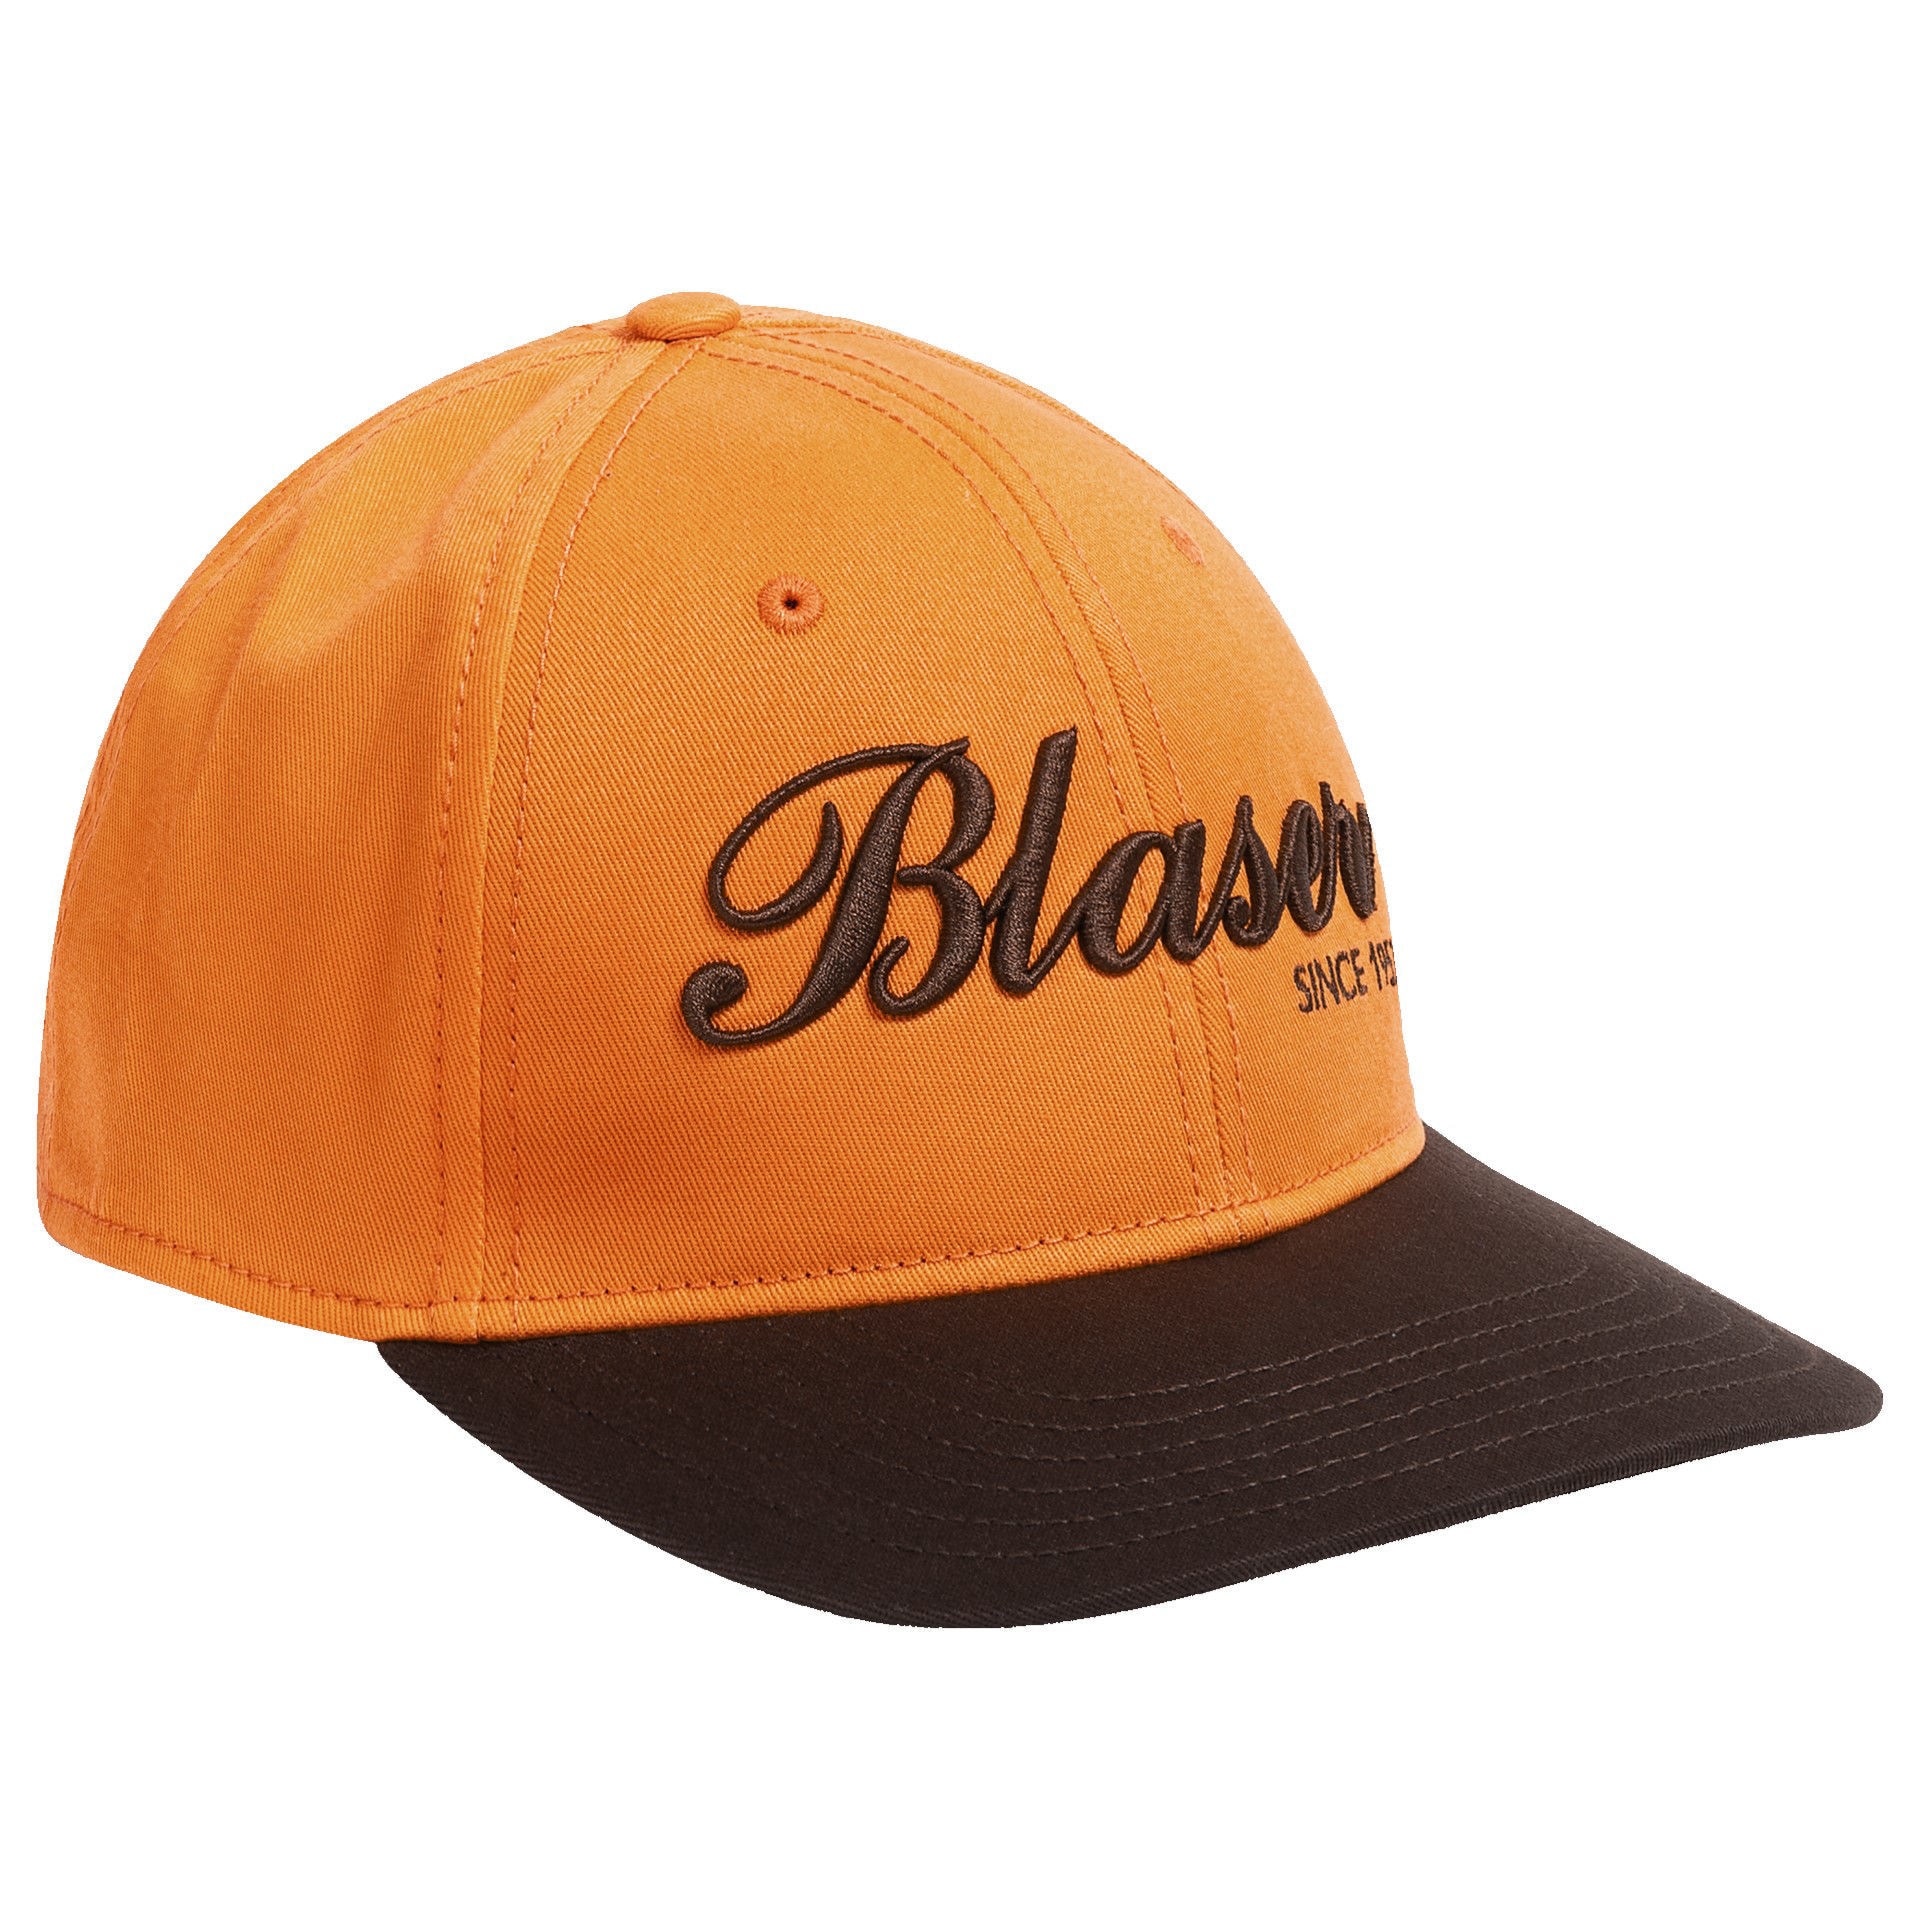 Blaser Striker Cap Limited Edition Blaze Orange/Dark Brown